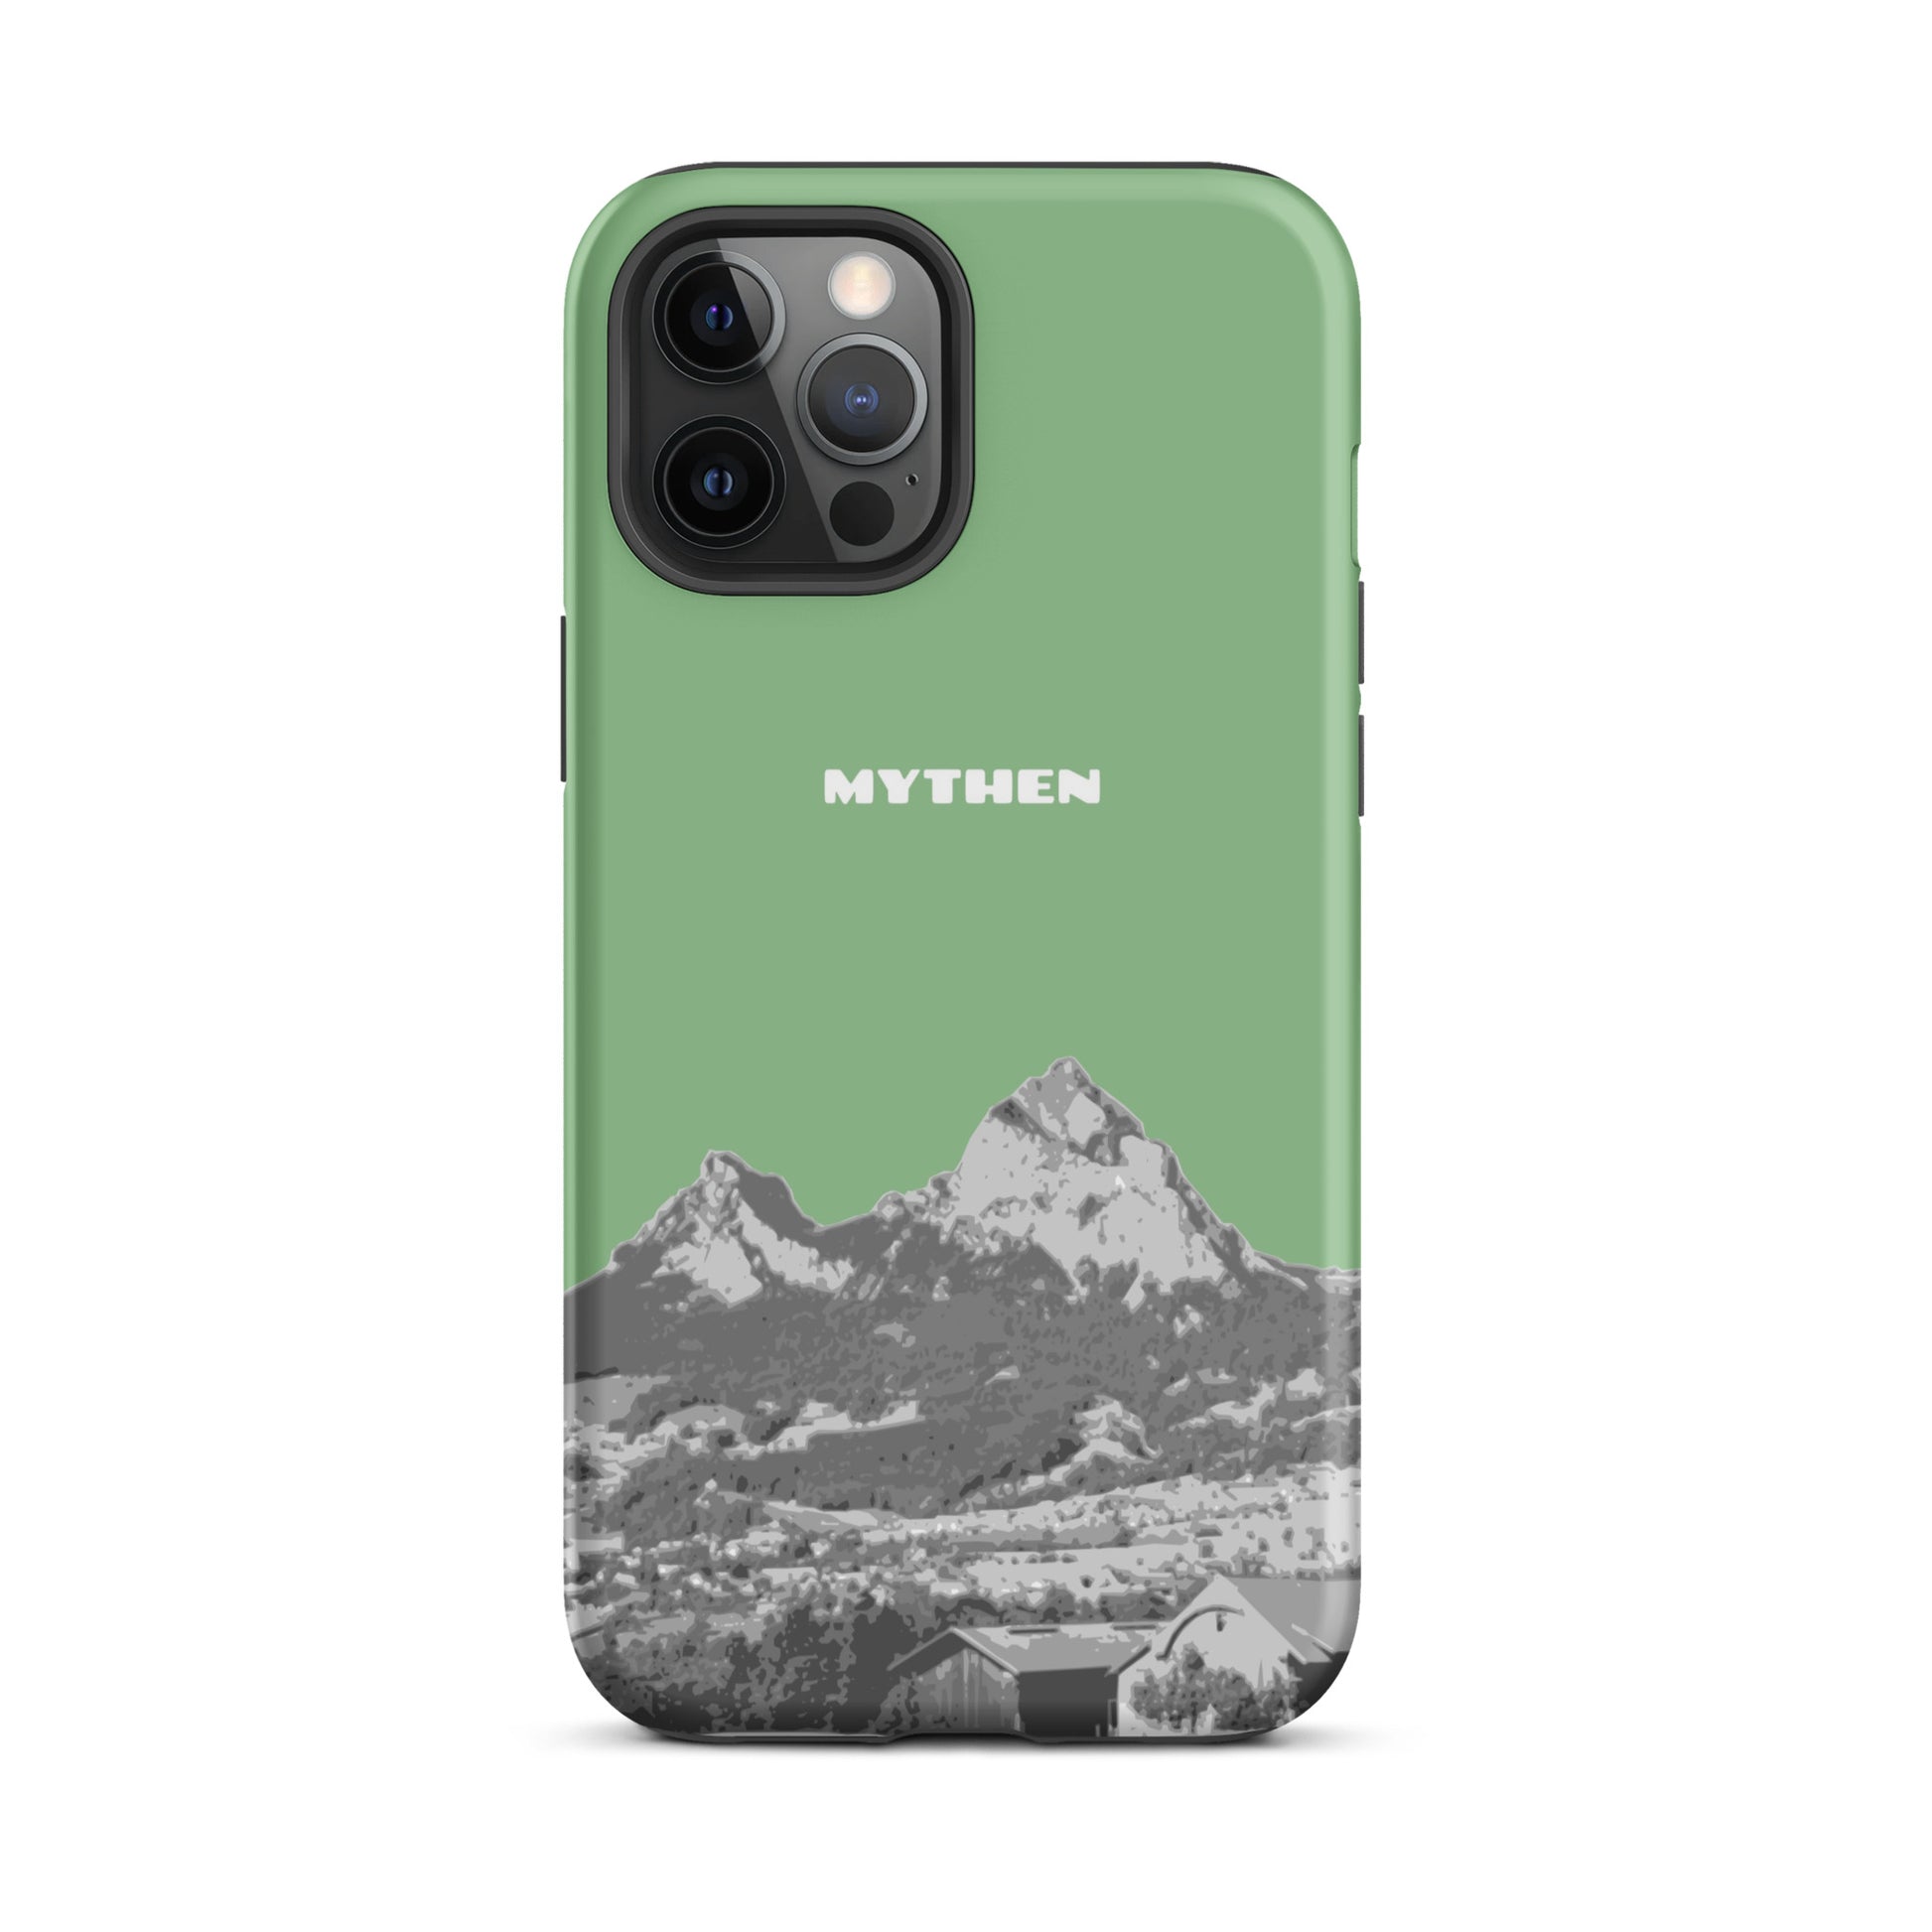 Hülle für das iPhone 12 Pro Max von Apple in der Farbe Hellgrün, dass den Grossen Mythen und den Kleinen Mythen bei Schwyz zeigt. 